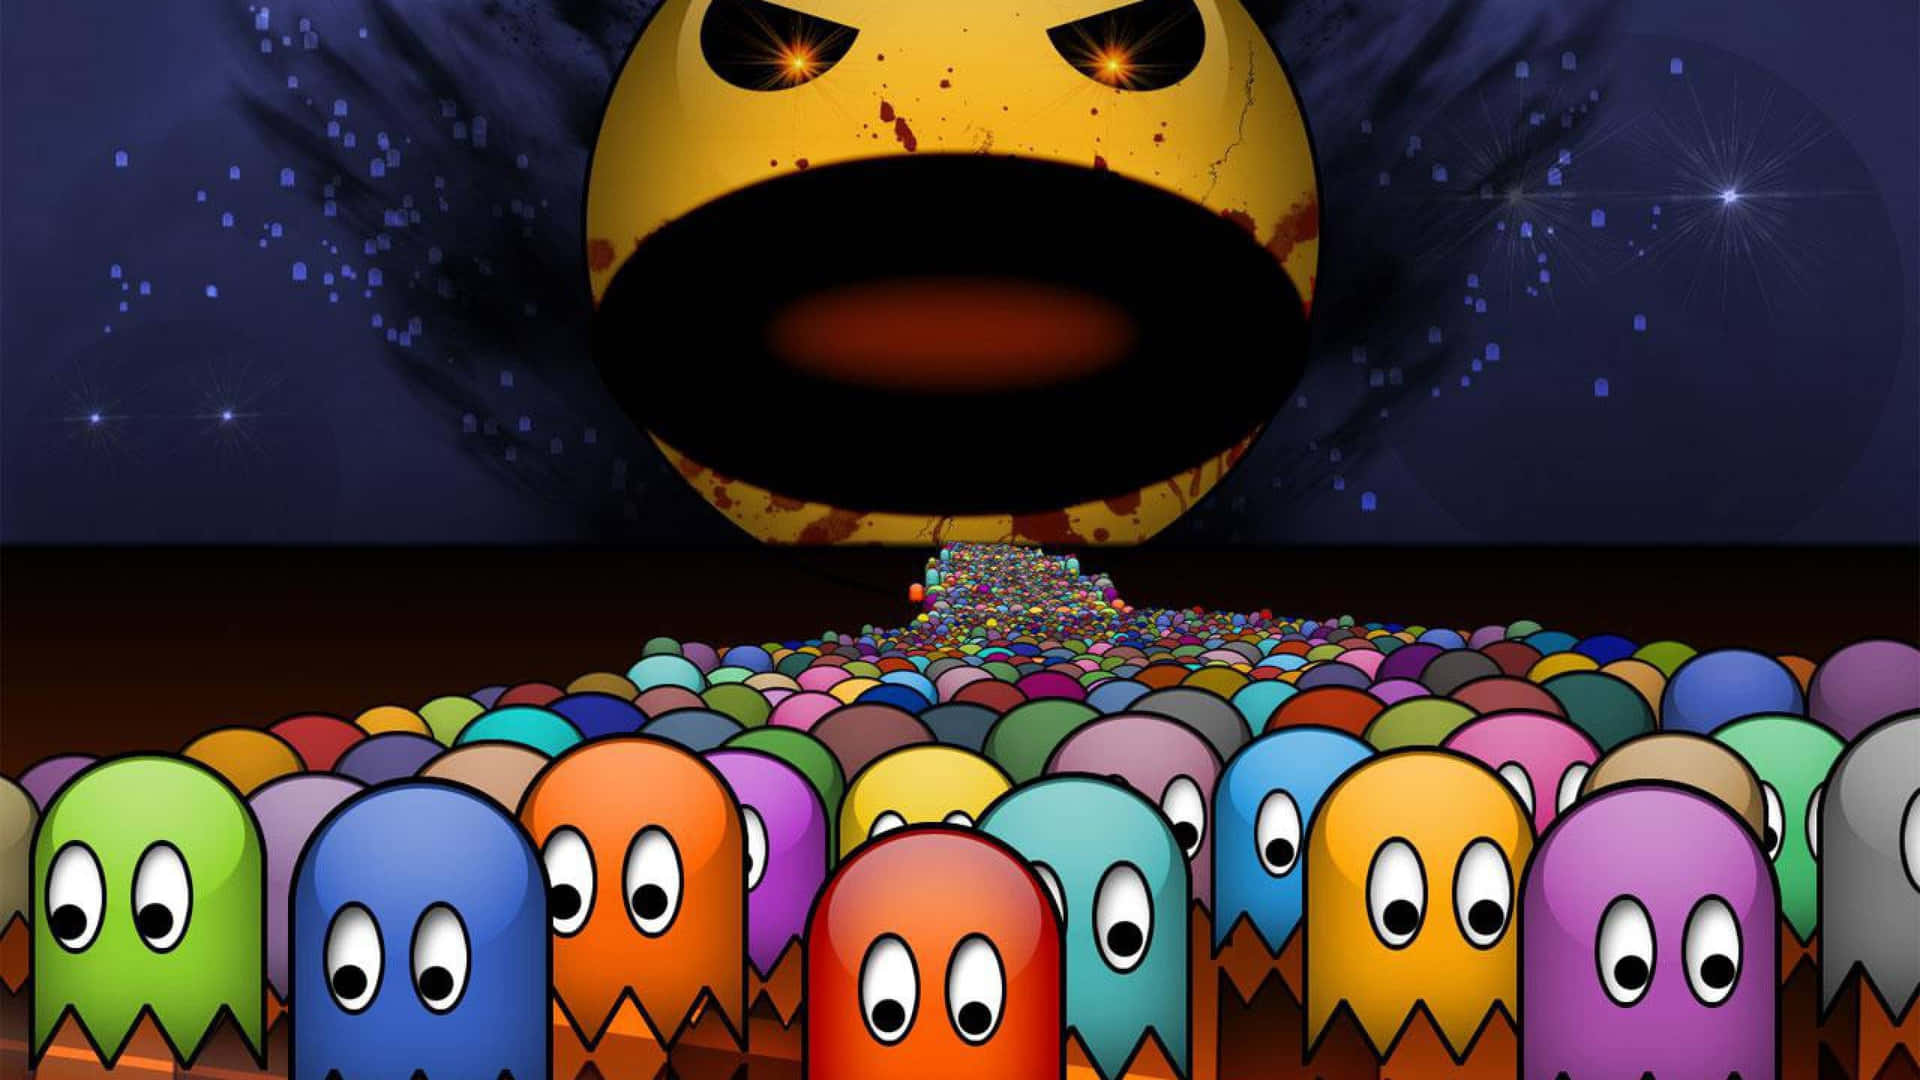 Pac Man Pacman Pacman Pacman Pacman Pacman Pacman Pacman Pacman Pacman Pac Wallpaper